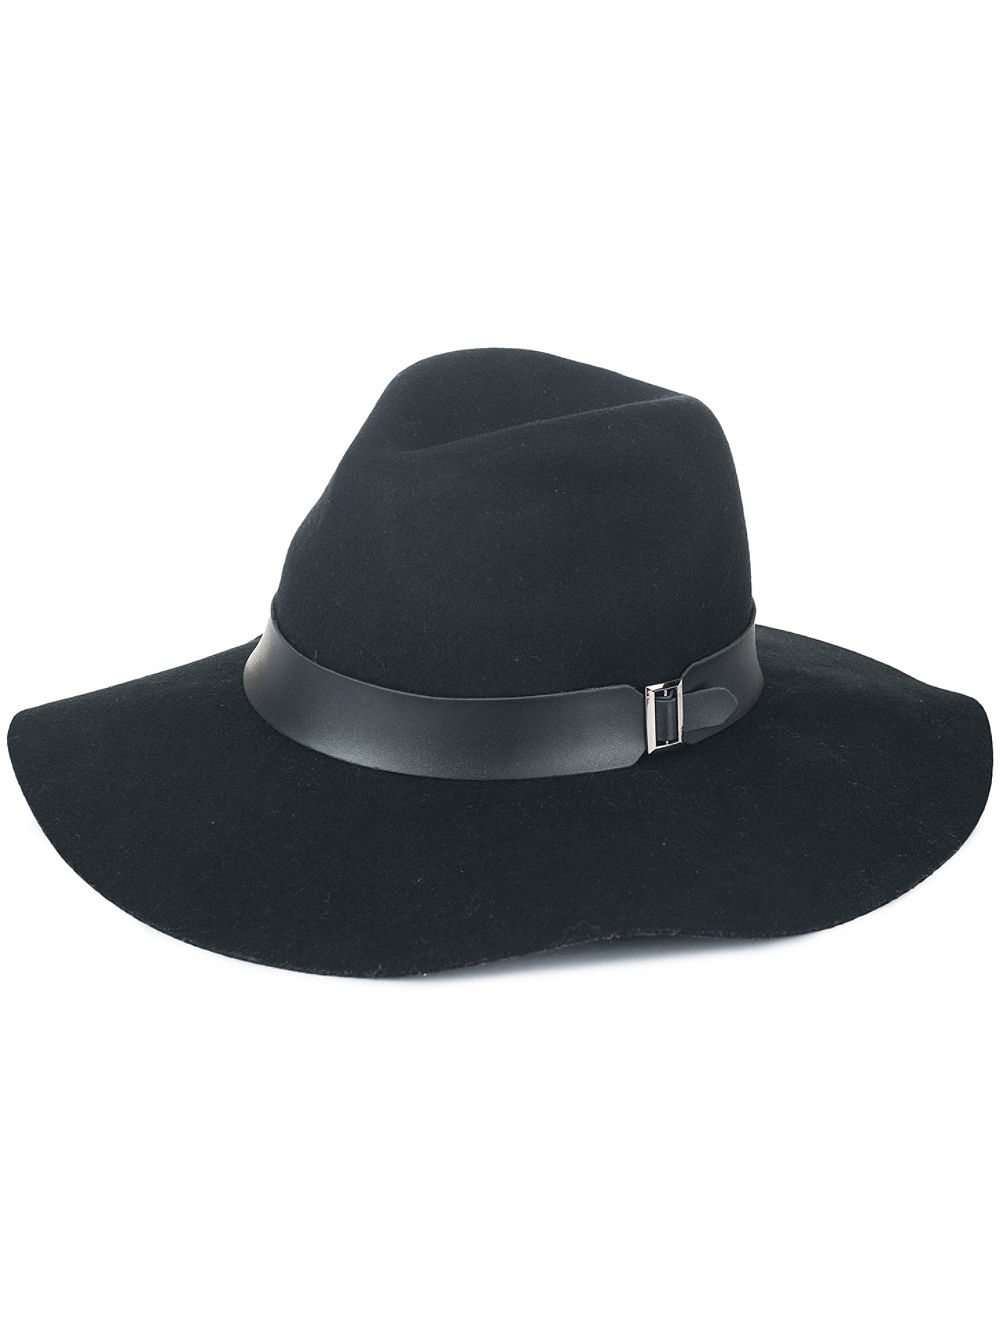 Runaway Panama Hatt